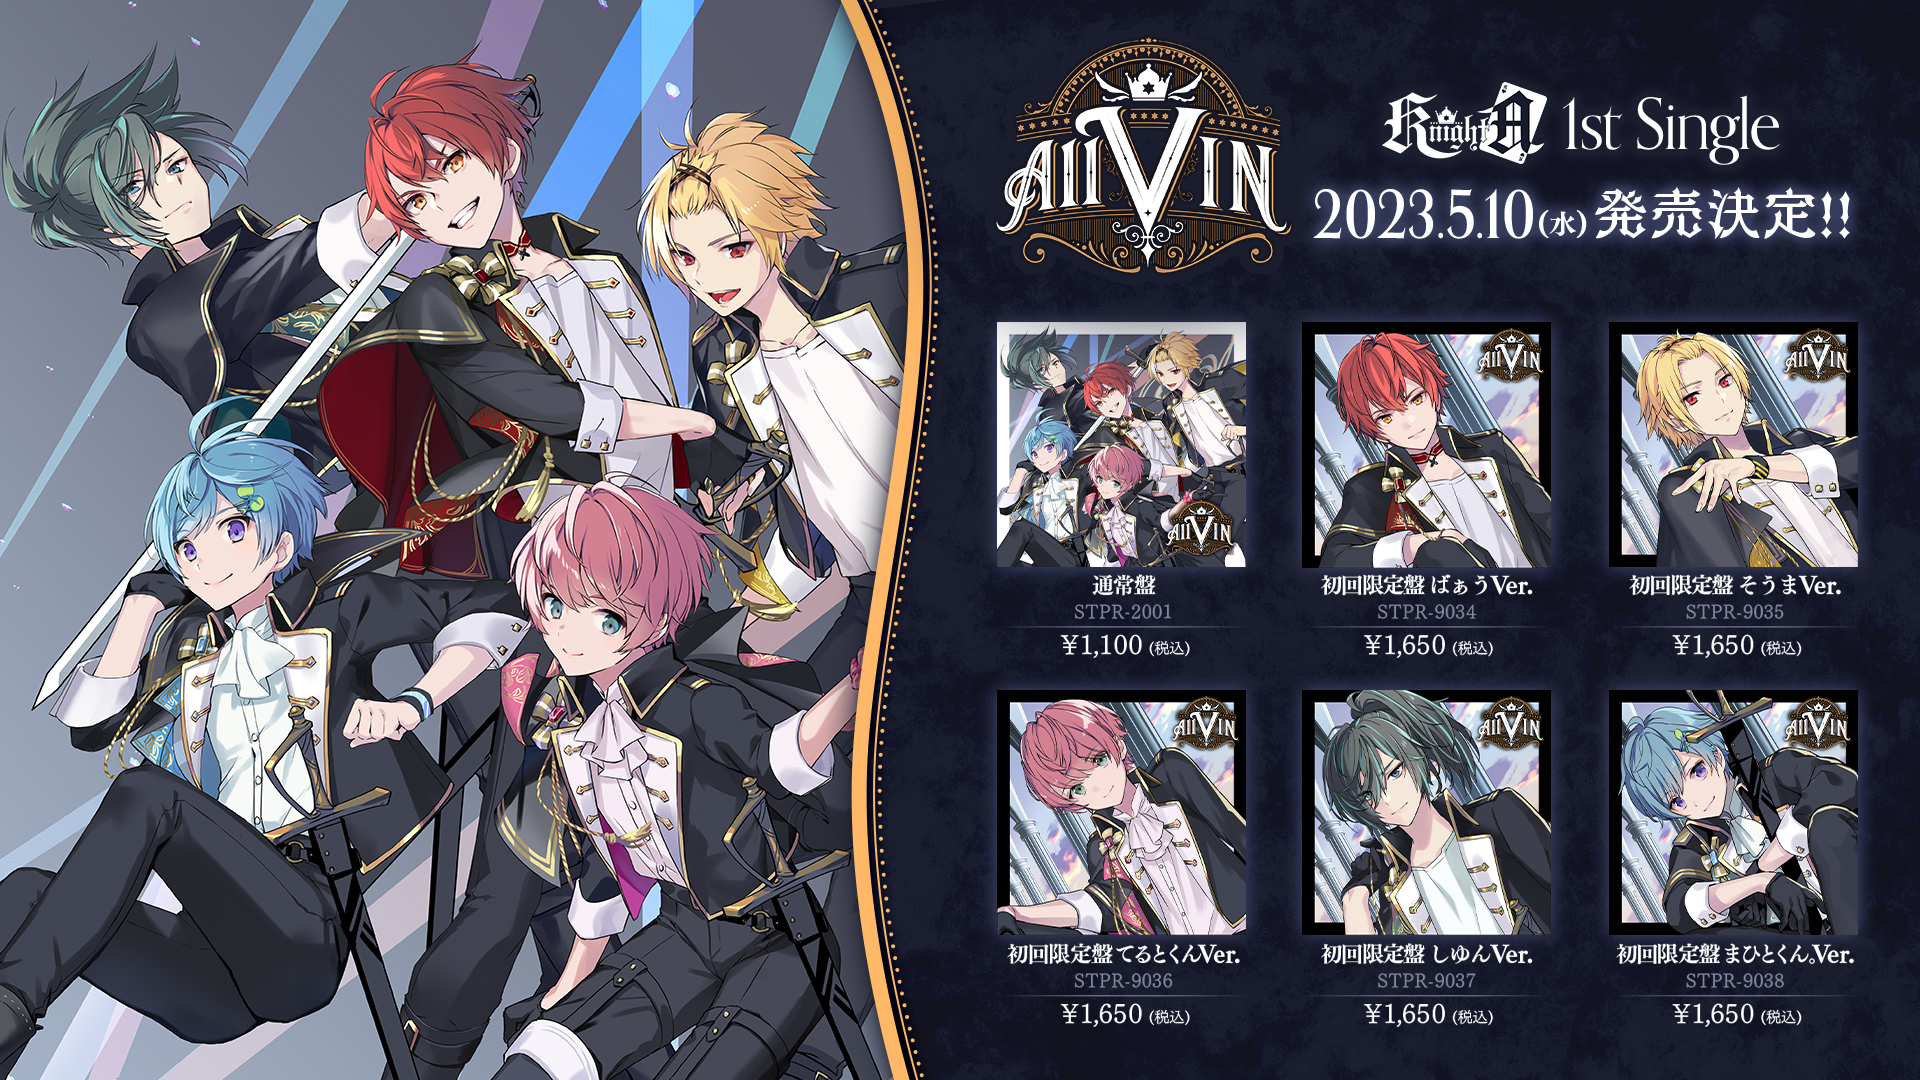 Knight A - 騎⼠A -】1st Single「AllVIN」2023年5月10日(水)リリース